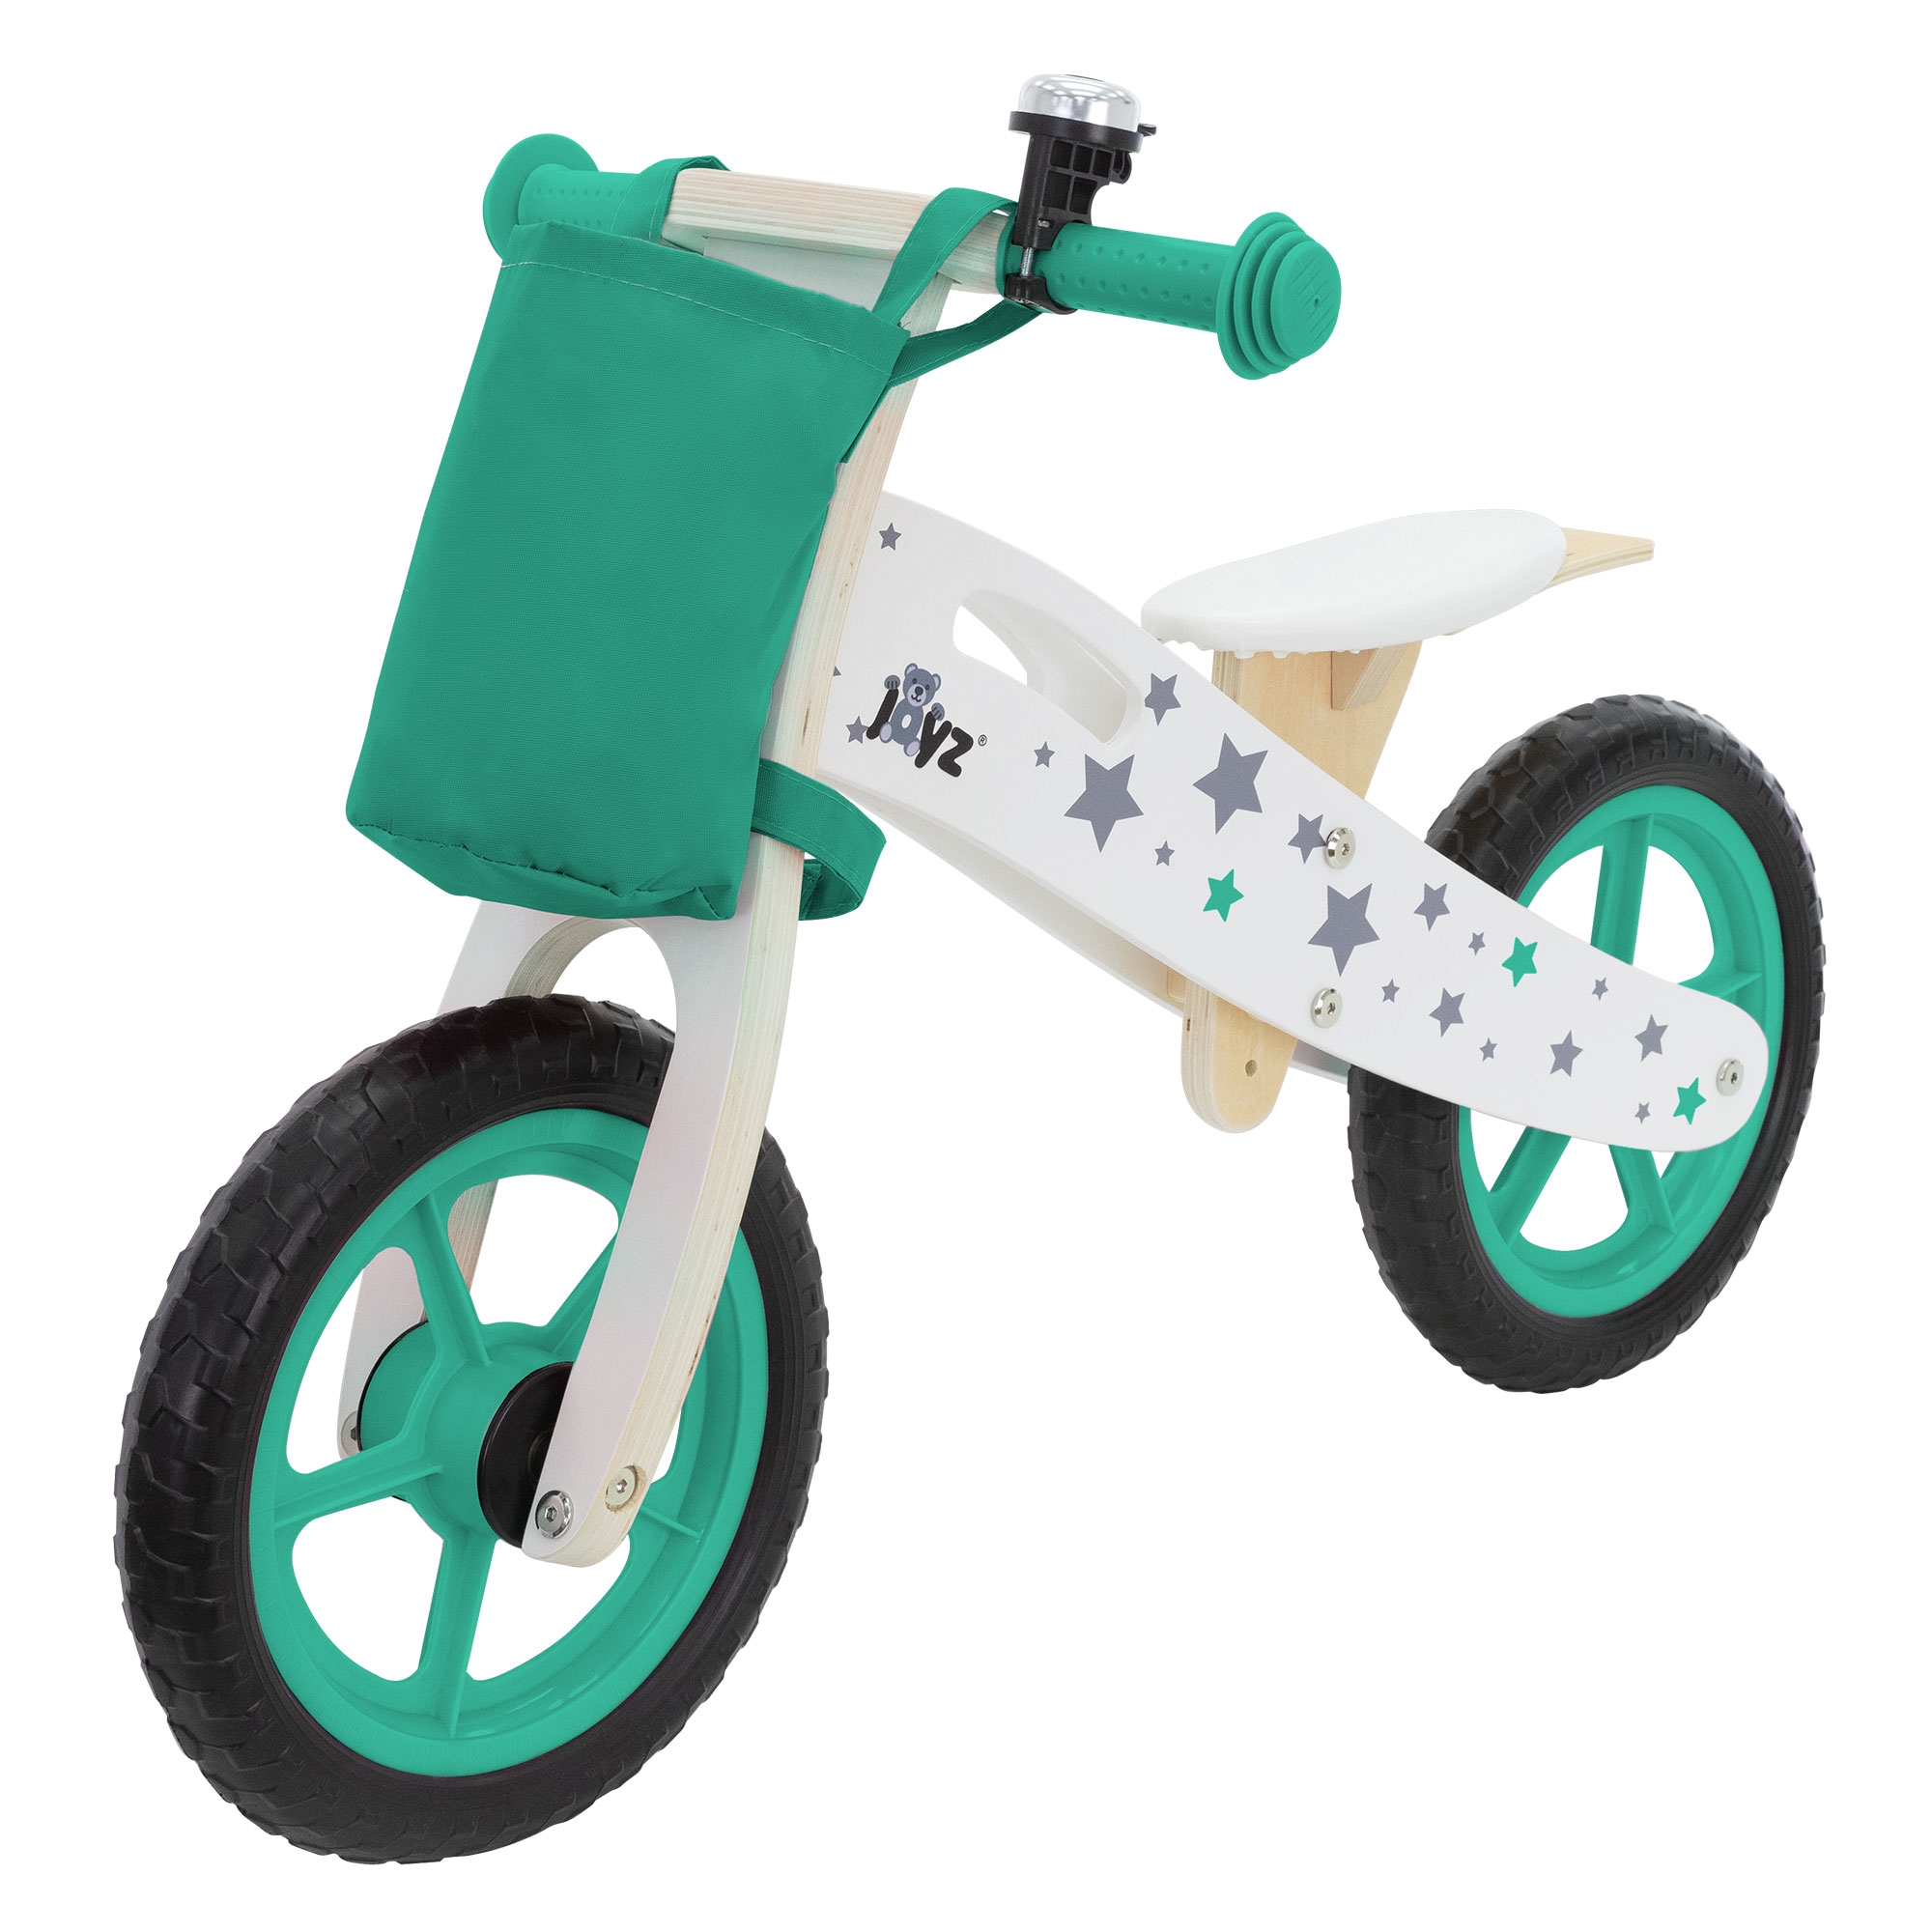 Bicicleta De Madera Joyz Para Niños A Partir De 2 Años Con Asiento Ajustable - verde - 